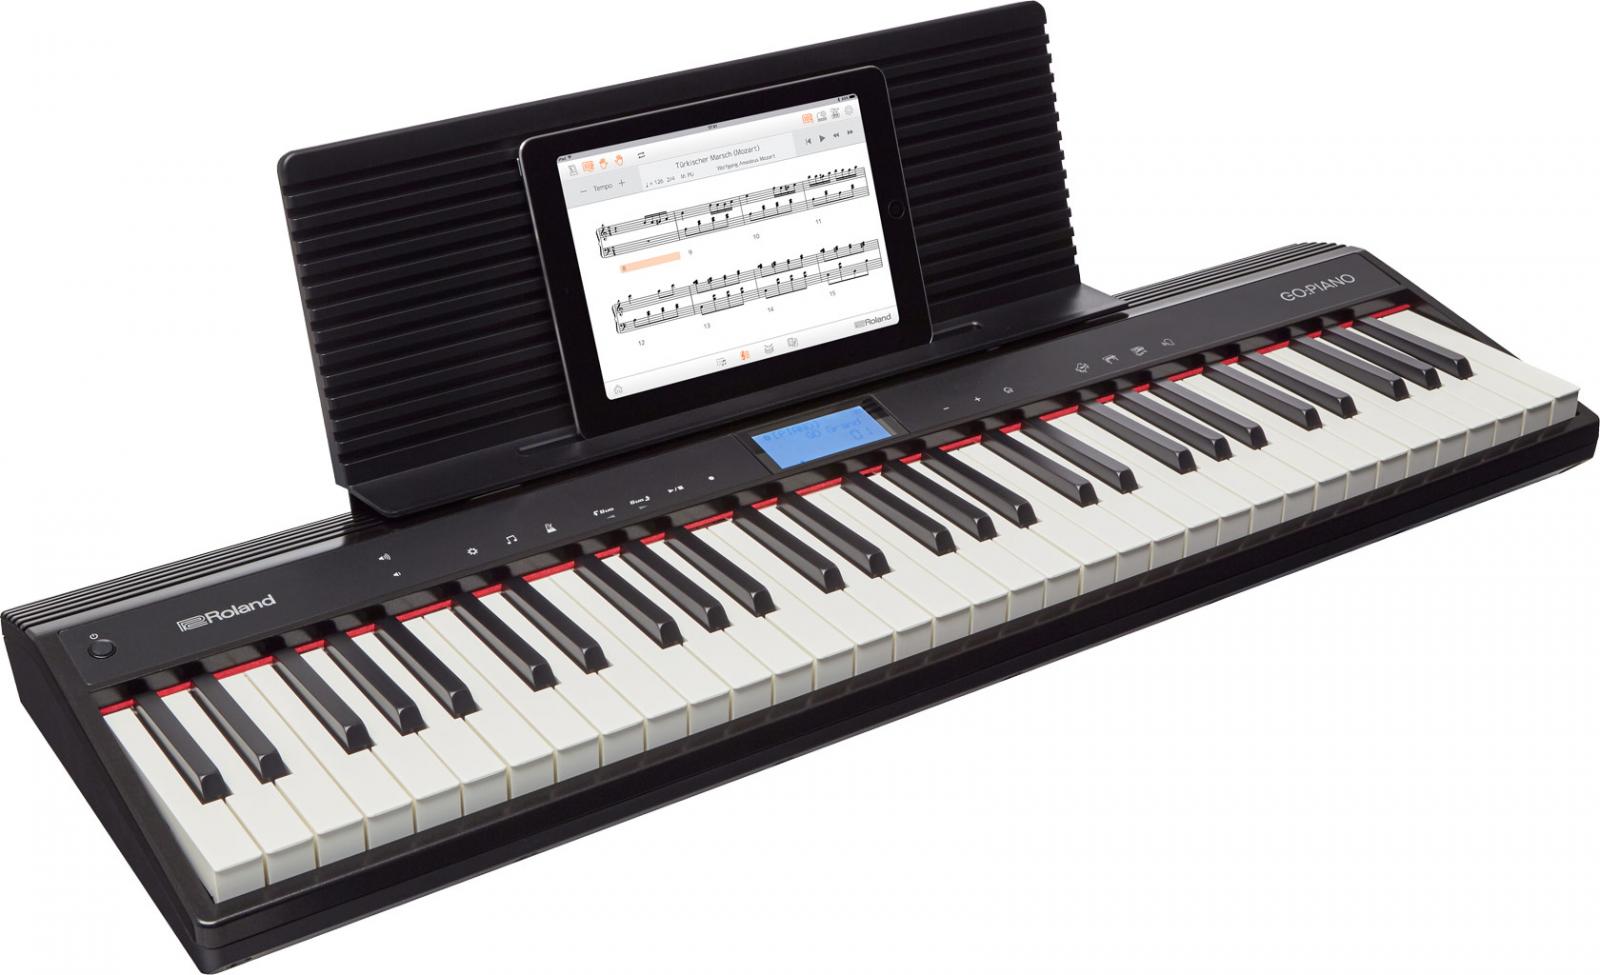 GO: KEYS cũng có chức năng như một nhạc cụ bàn phím thông thường với hơn 500 âm thanh 